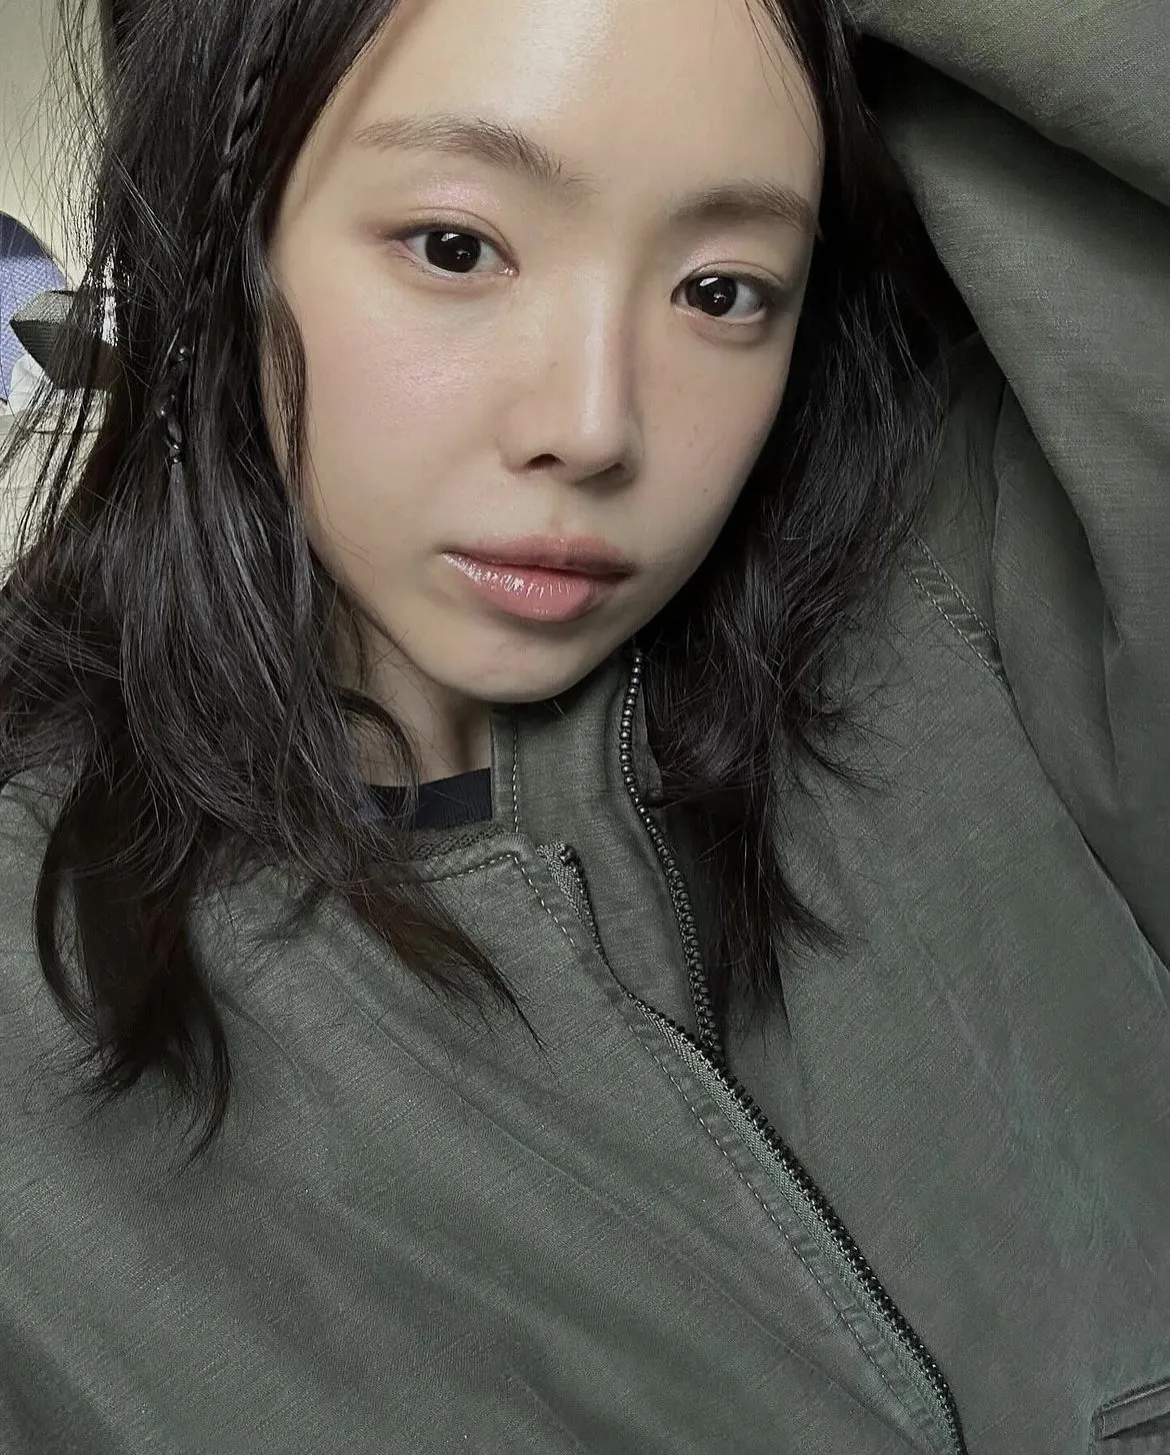 Son Naeun choca com mudança drástica no visual: 'Ela desperdiçou sua beleza natural...'